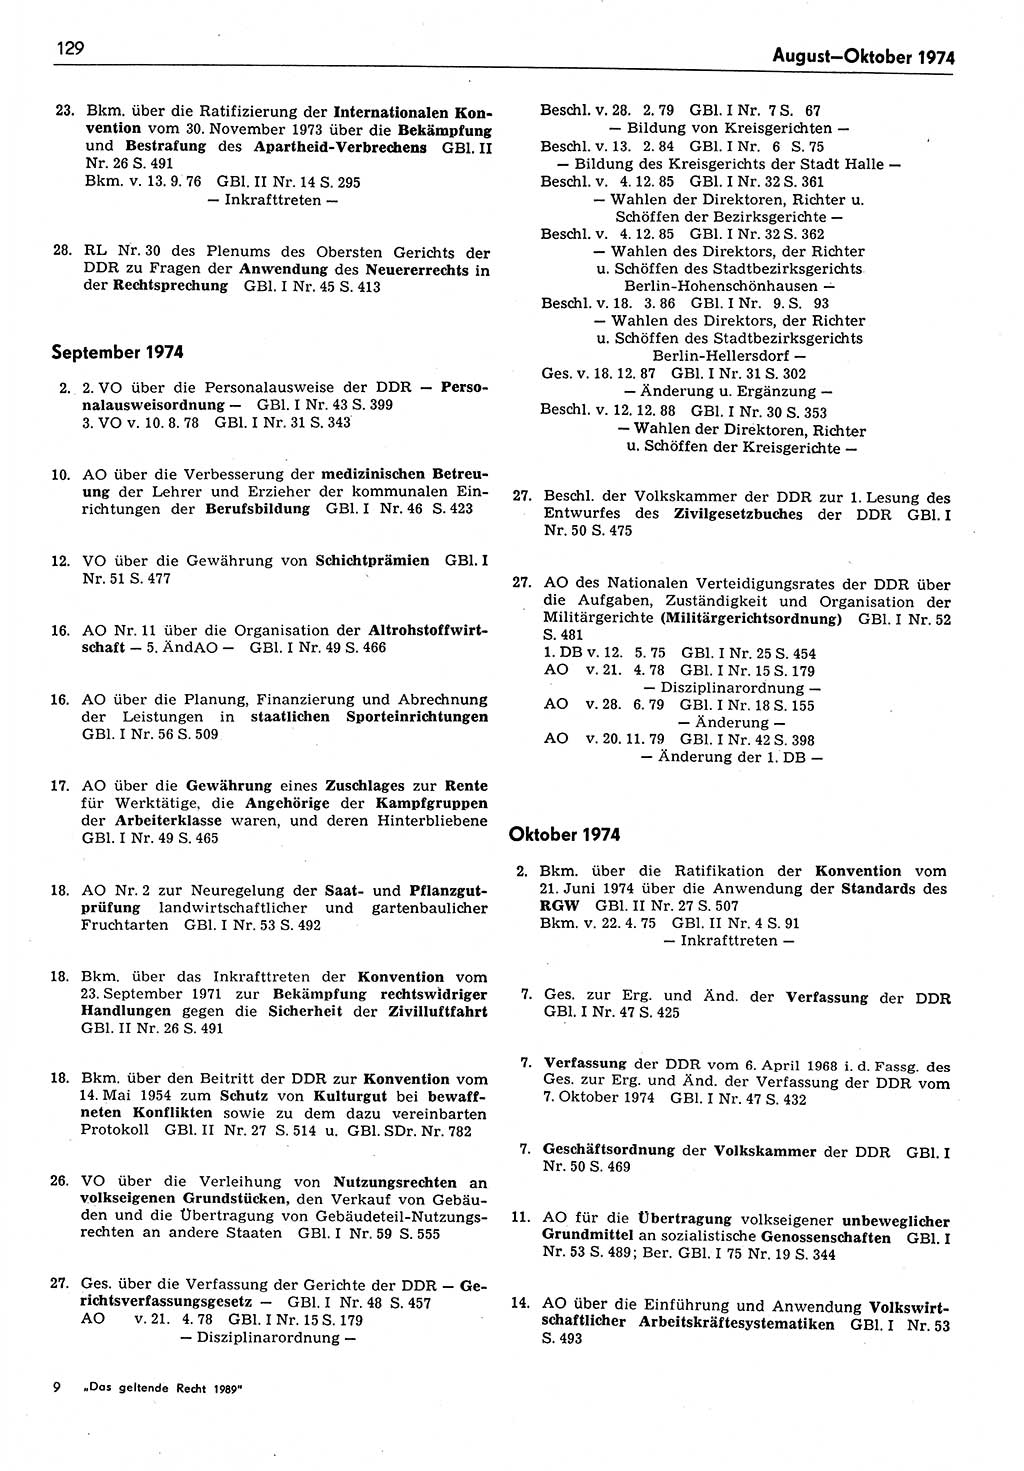 Das geltende Recht der Deutschen Demokratischen Republik (DDR) 1949-1988, Seite 129 (Gelt. R. DDR 1949-1988, S. 129)